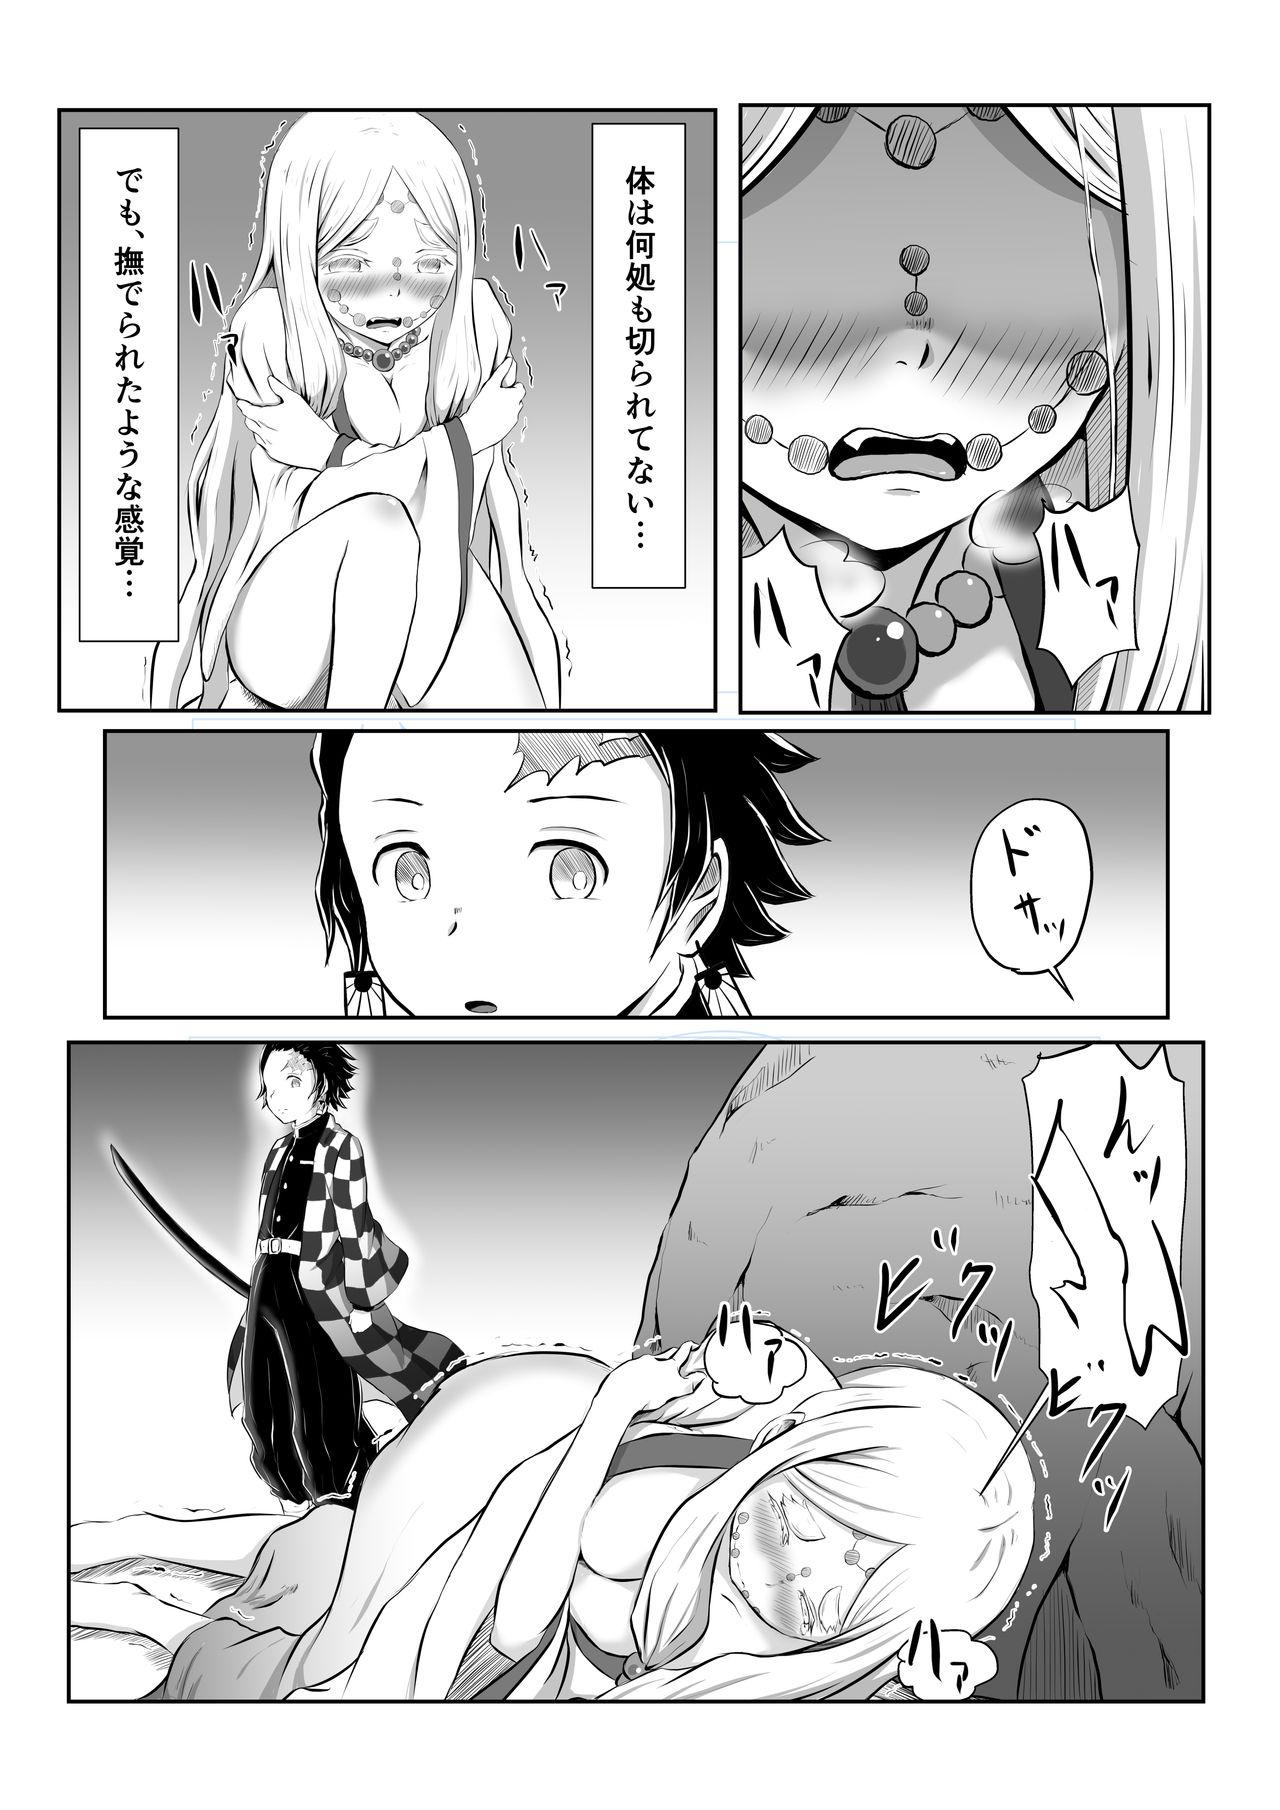 Masterbate Hinokami Sex. - Kimetsu no yaiba | demon slayer Butthole - Page 5